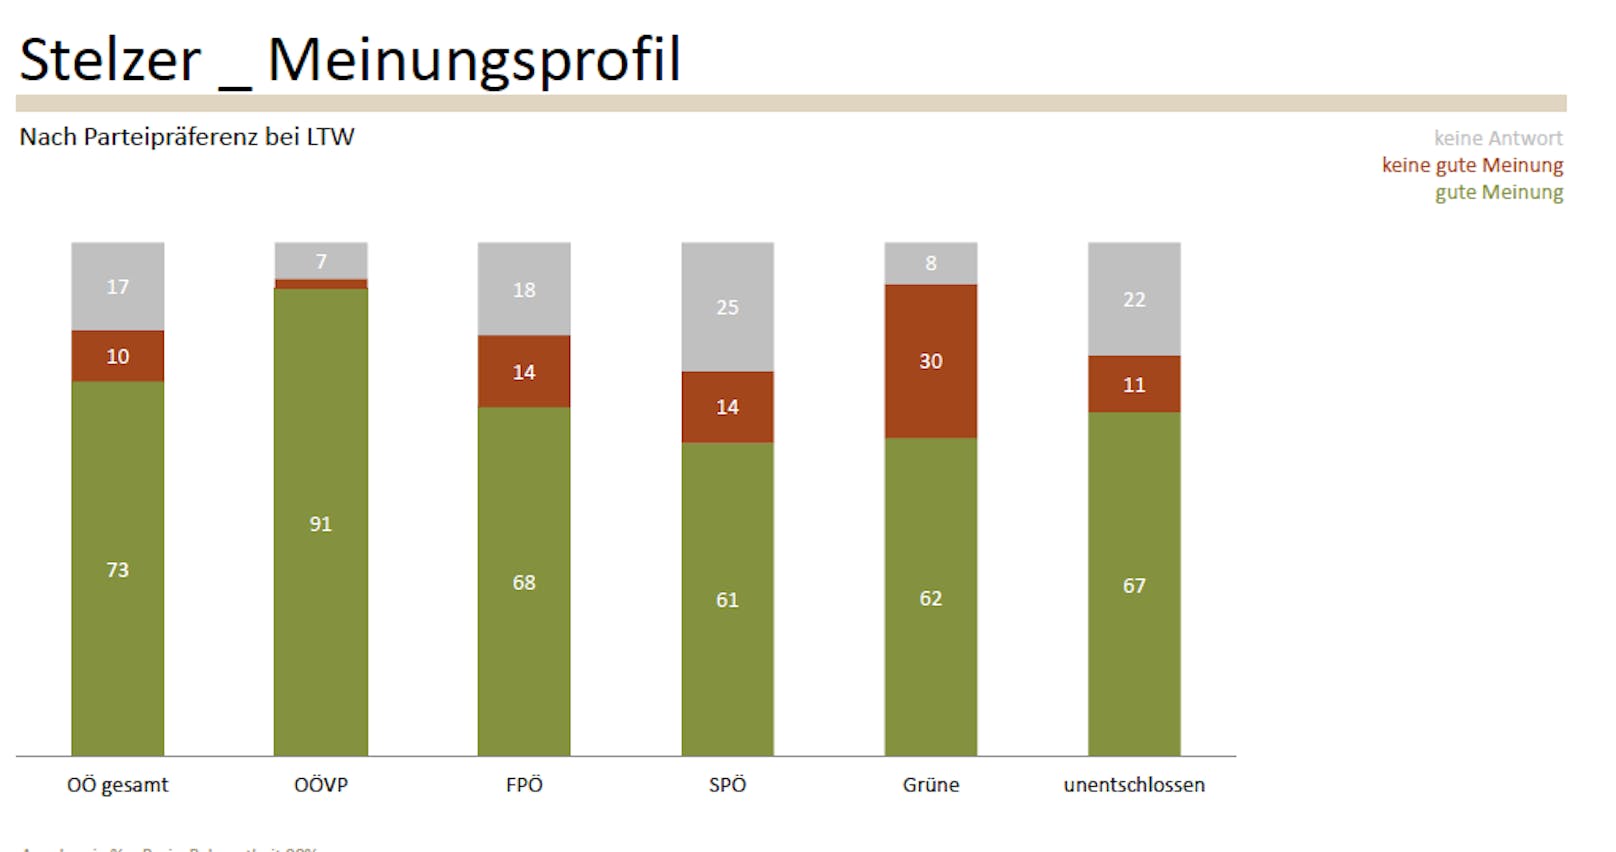 Fast drei Viertel der Oberösterreicher haben von LH Stelzer eine "gute Meinung".